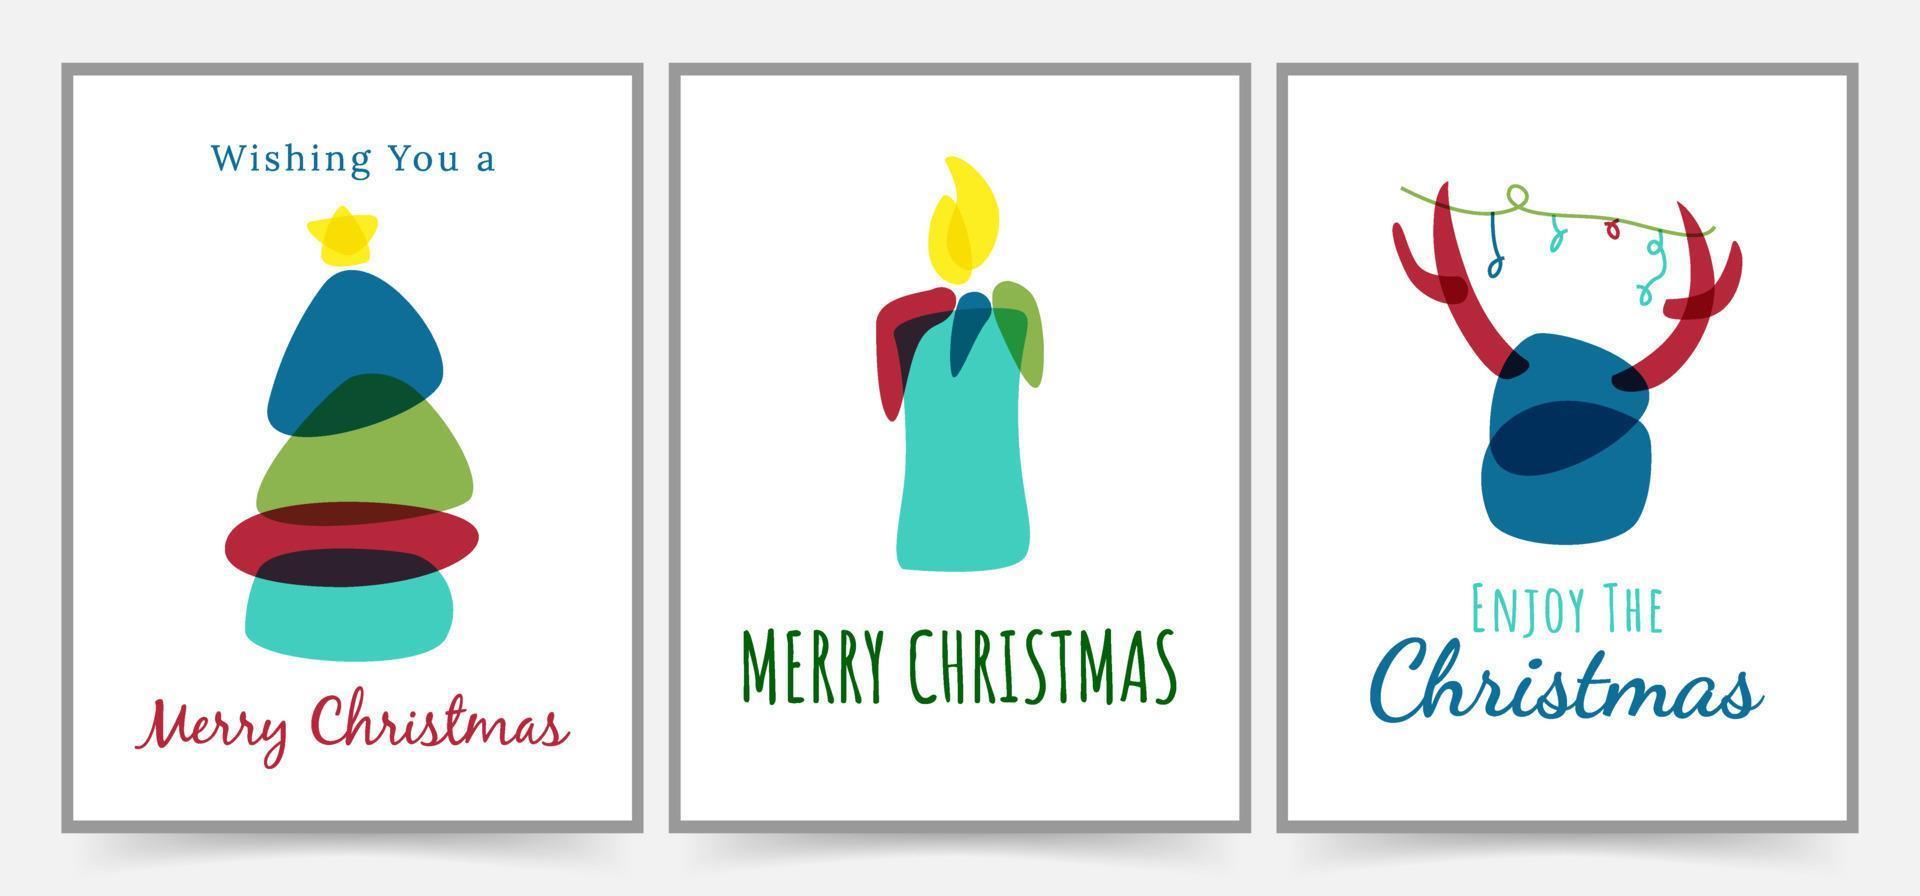 cartões simples de feliz Natal, planos de fundo, cartazes e design da capa. ilustração de modelo de banners e convites de férias. cartão de natal com formato moderno e minimalista vetor